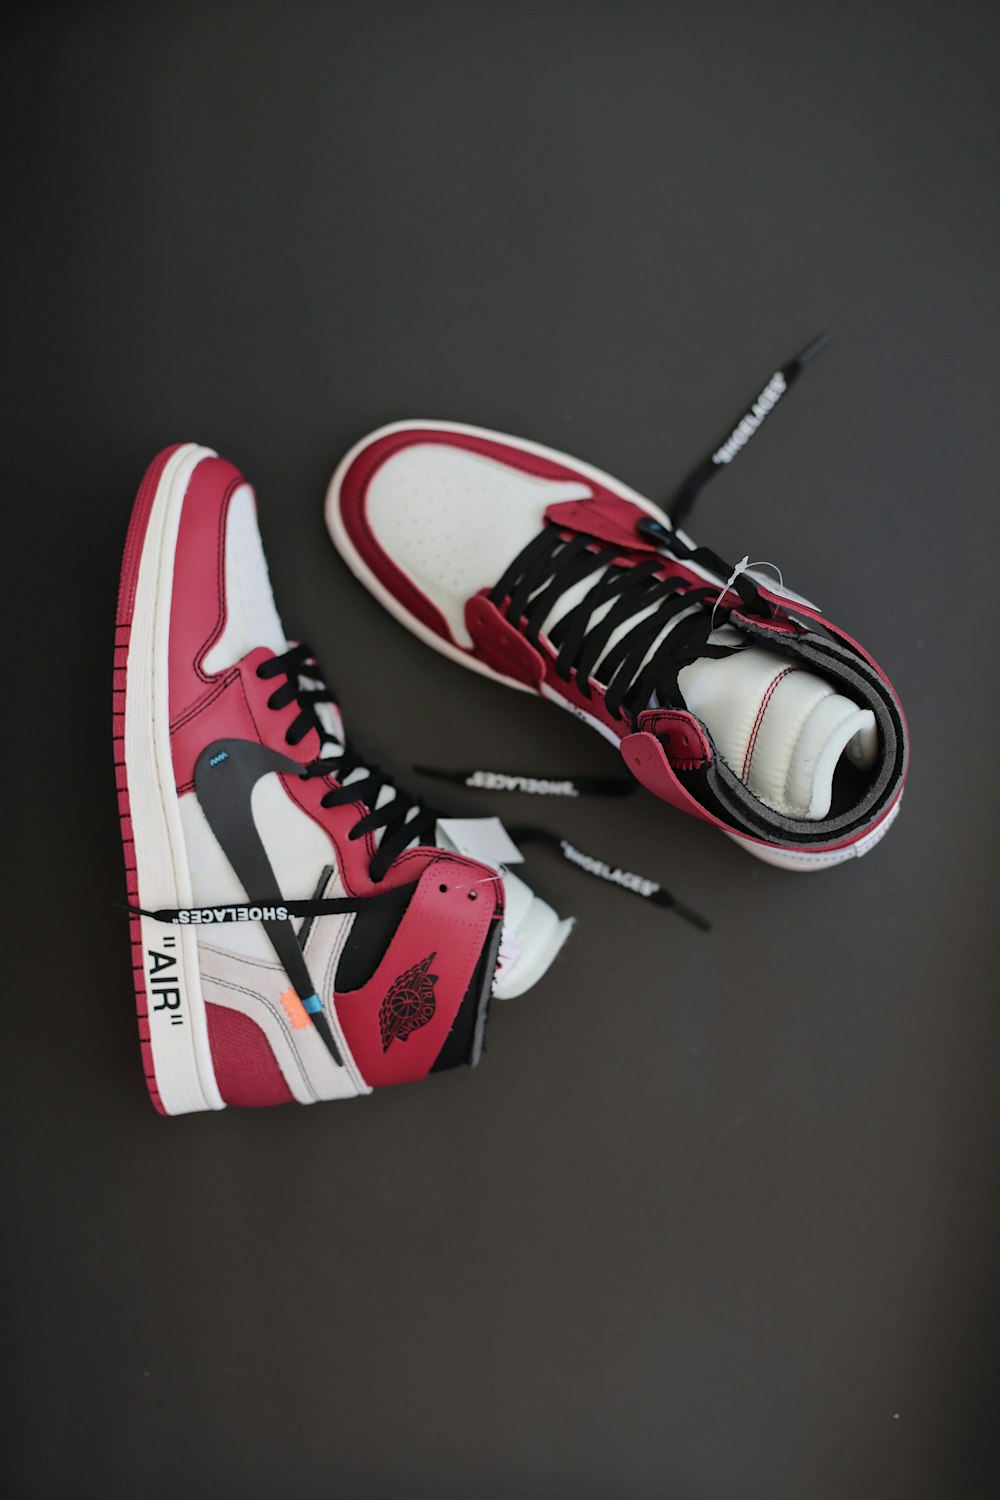 Foto par de zapatos deportivos Nike Air Jordan rojos, blancos y – Imagen Vestir gratis en Unsplash